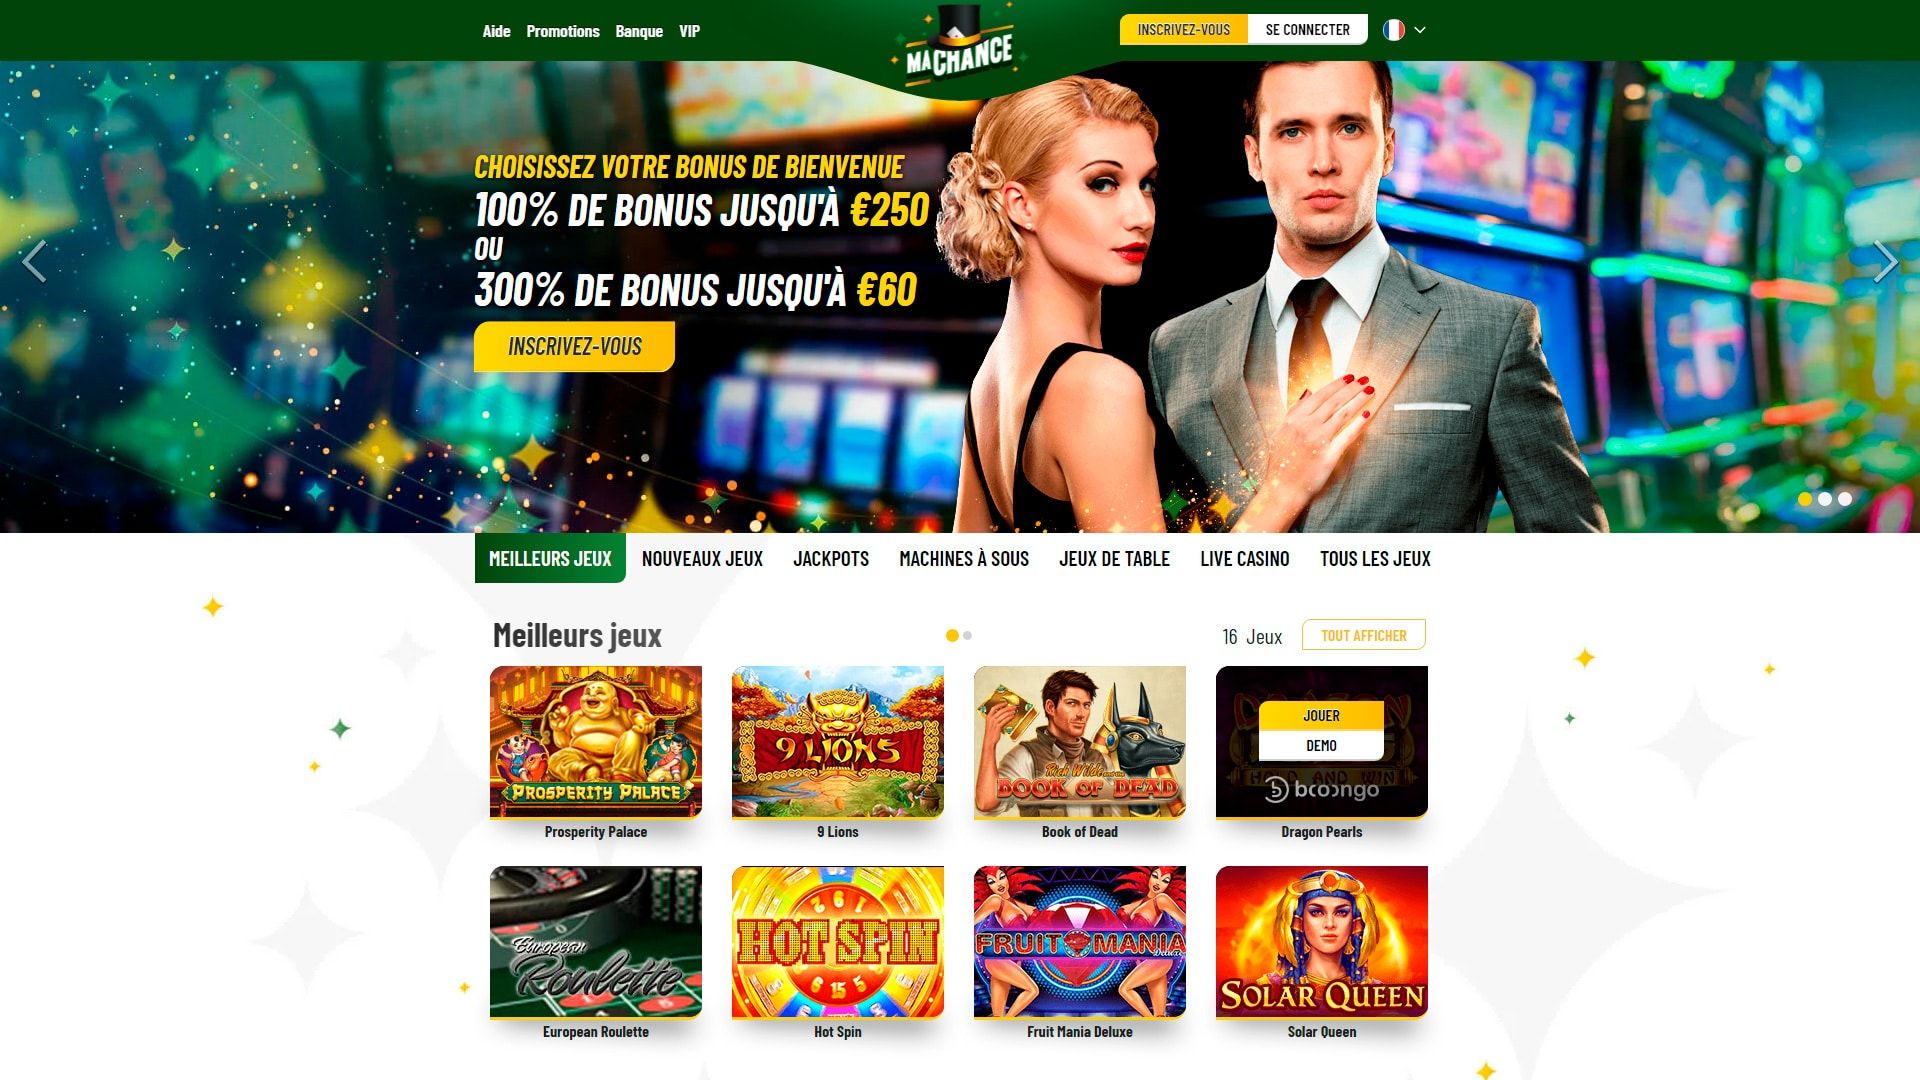 Website status machance-casino.org is   ONLINE